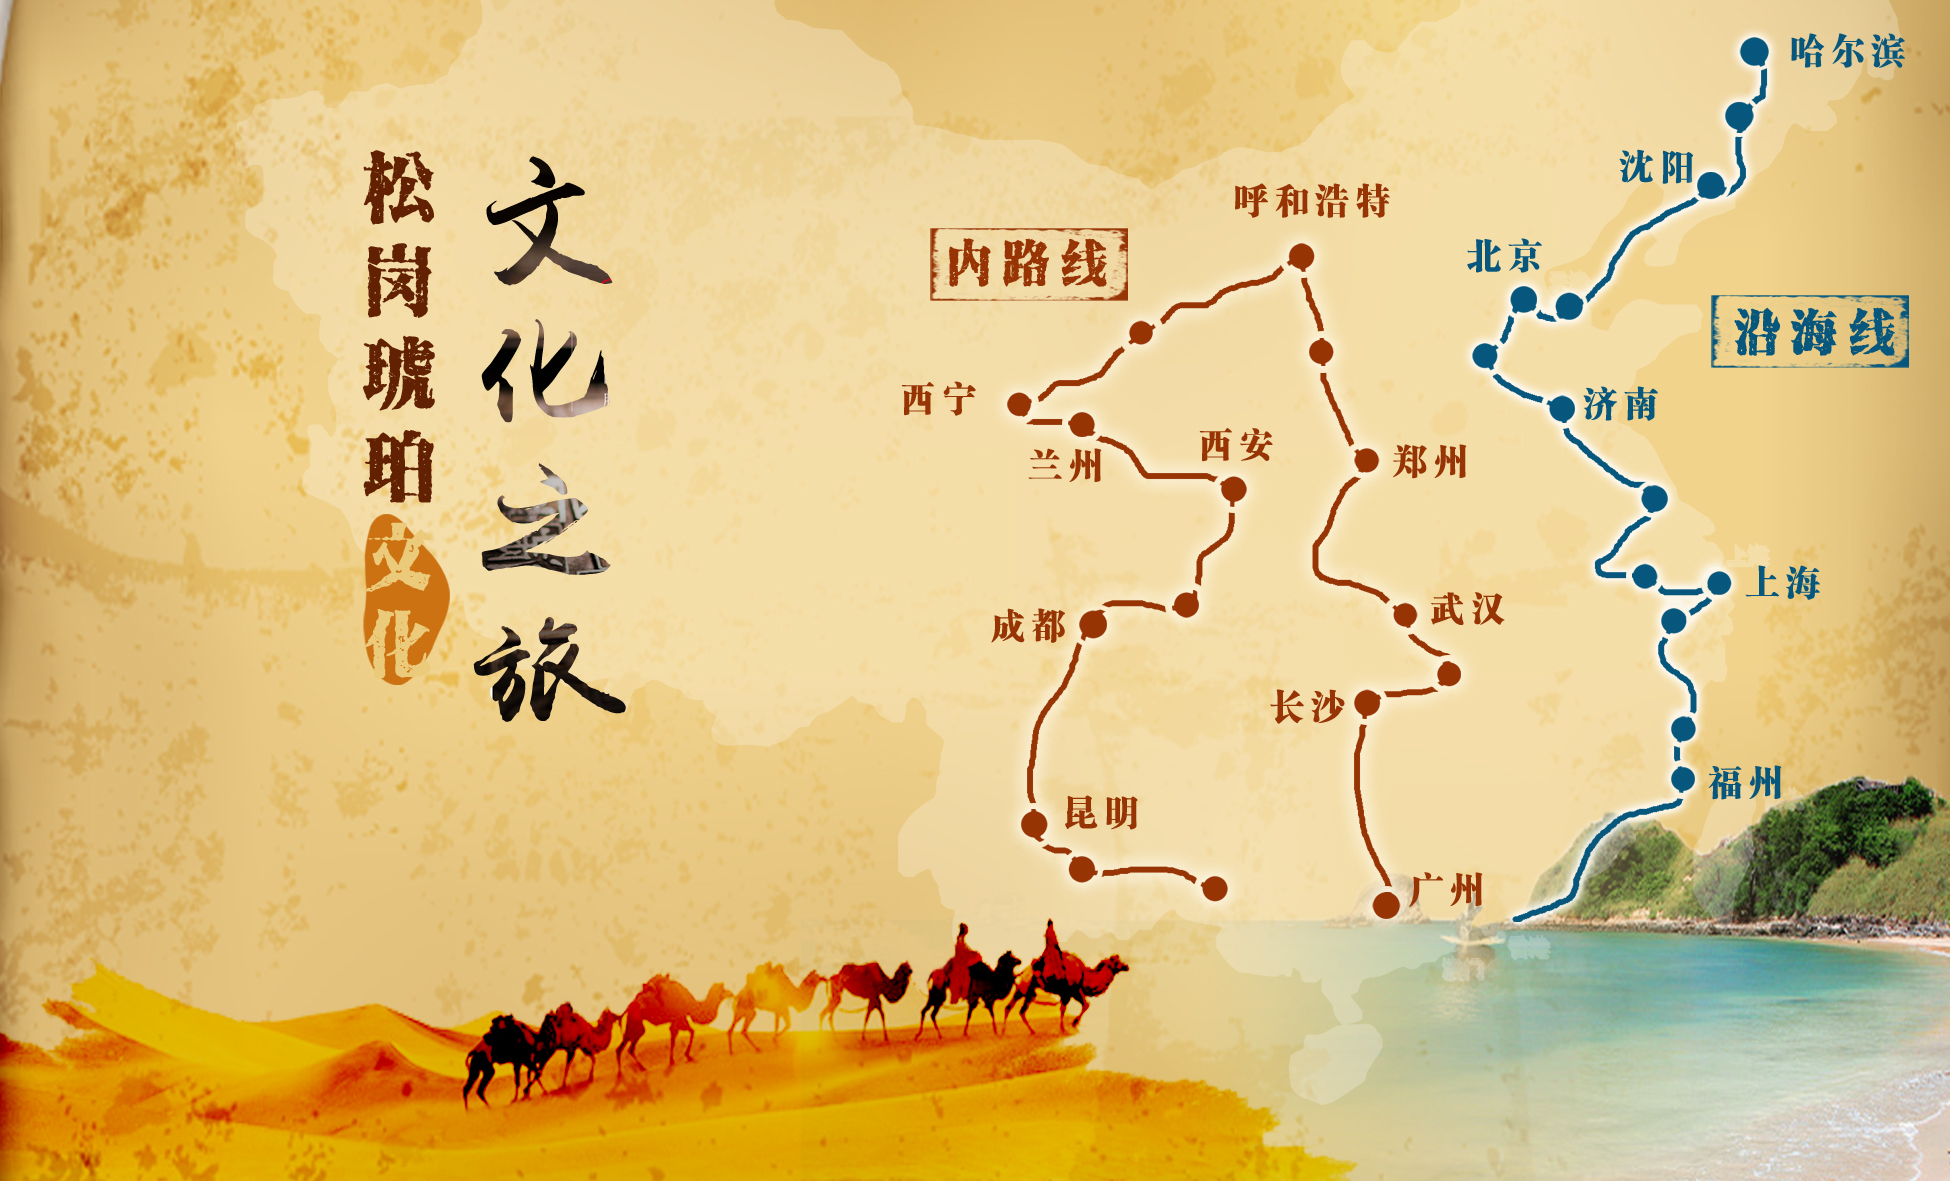 2018 “琥珀天使 自然遗玉洒中国”——松岗琥珀文化之旅（III）线路图